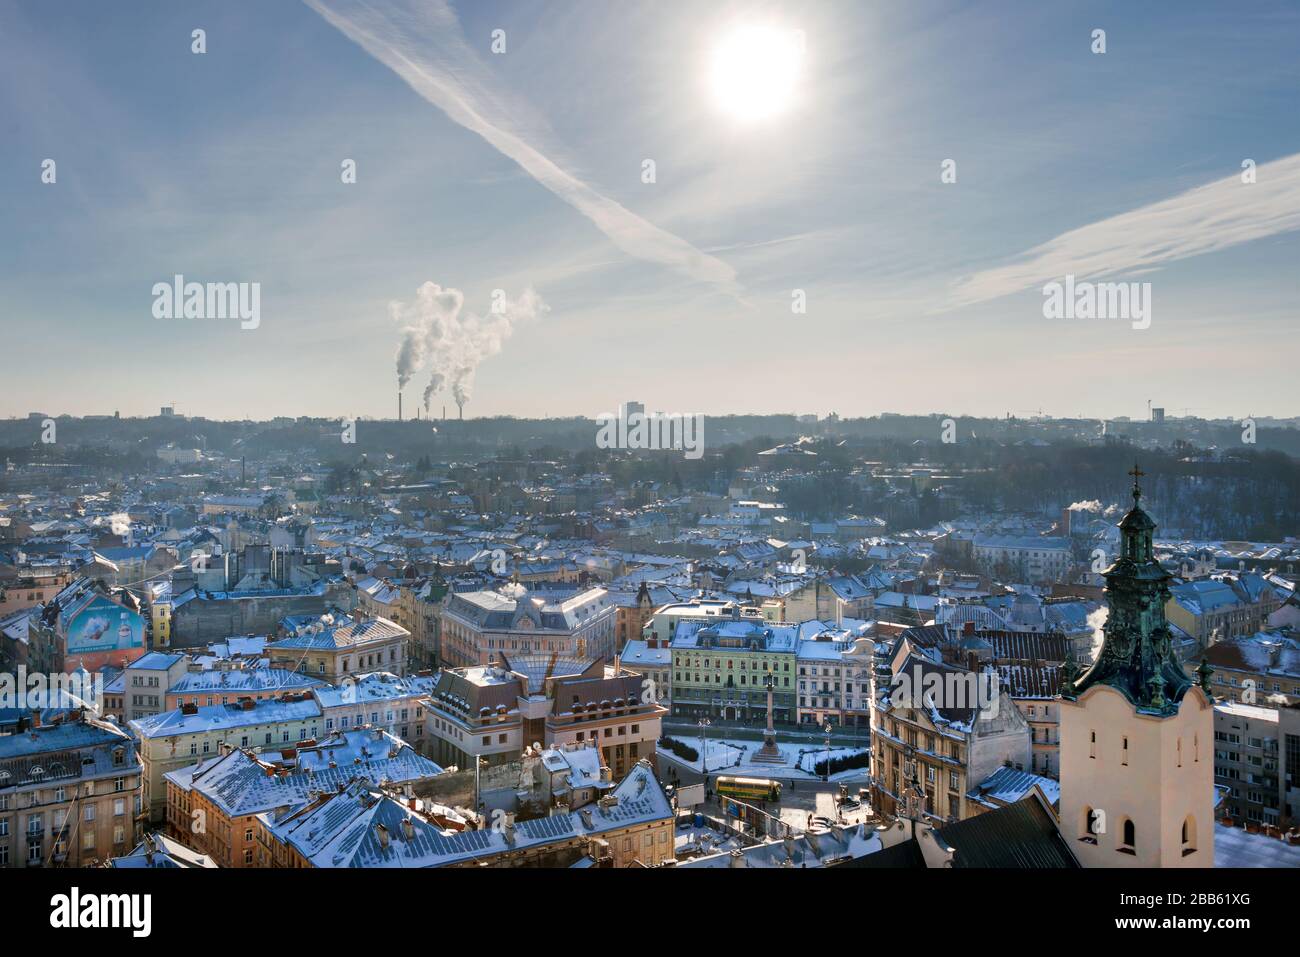 Vista panorámica de invierno del Ayuntamiento en el centro de la ciudad de Lviv, Ucrania. Edificios antiguos. Los techos cubiertos de nieve. Foto de stock